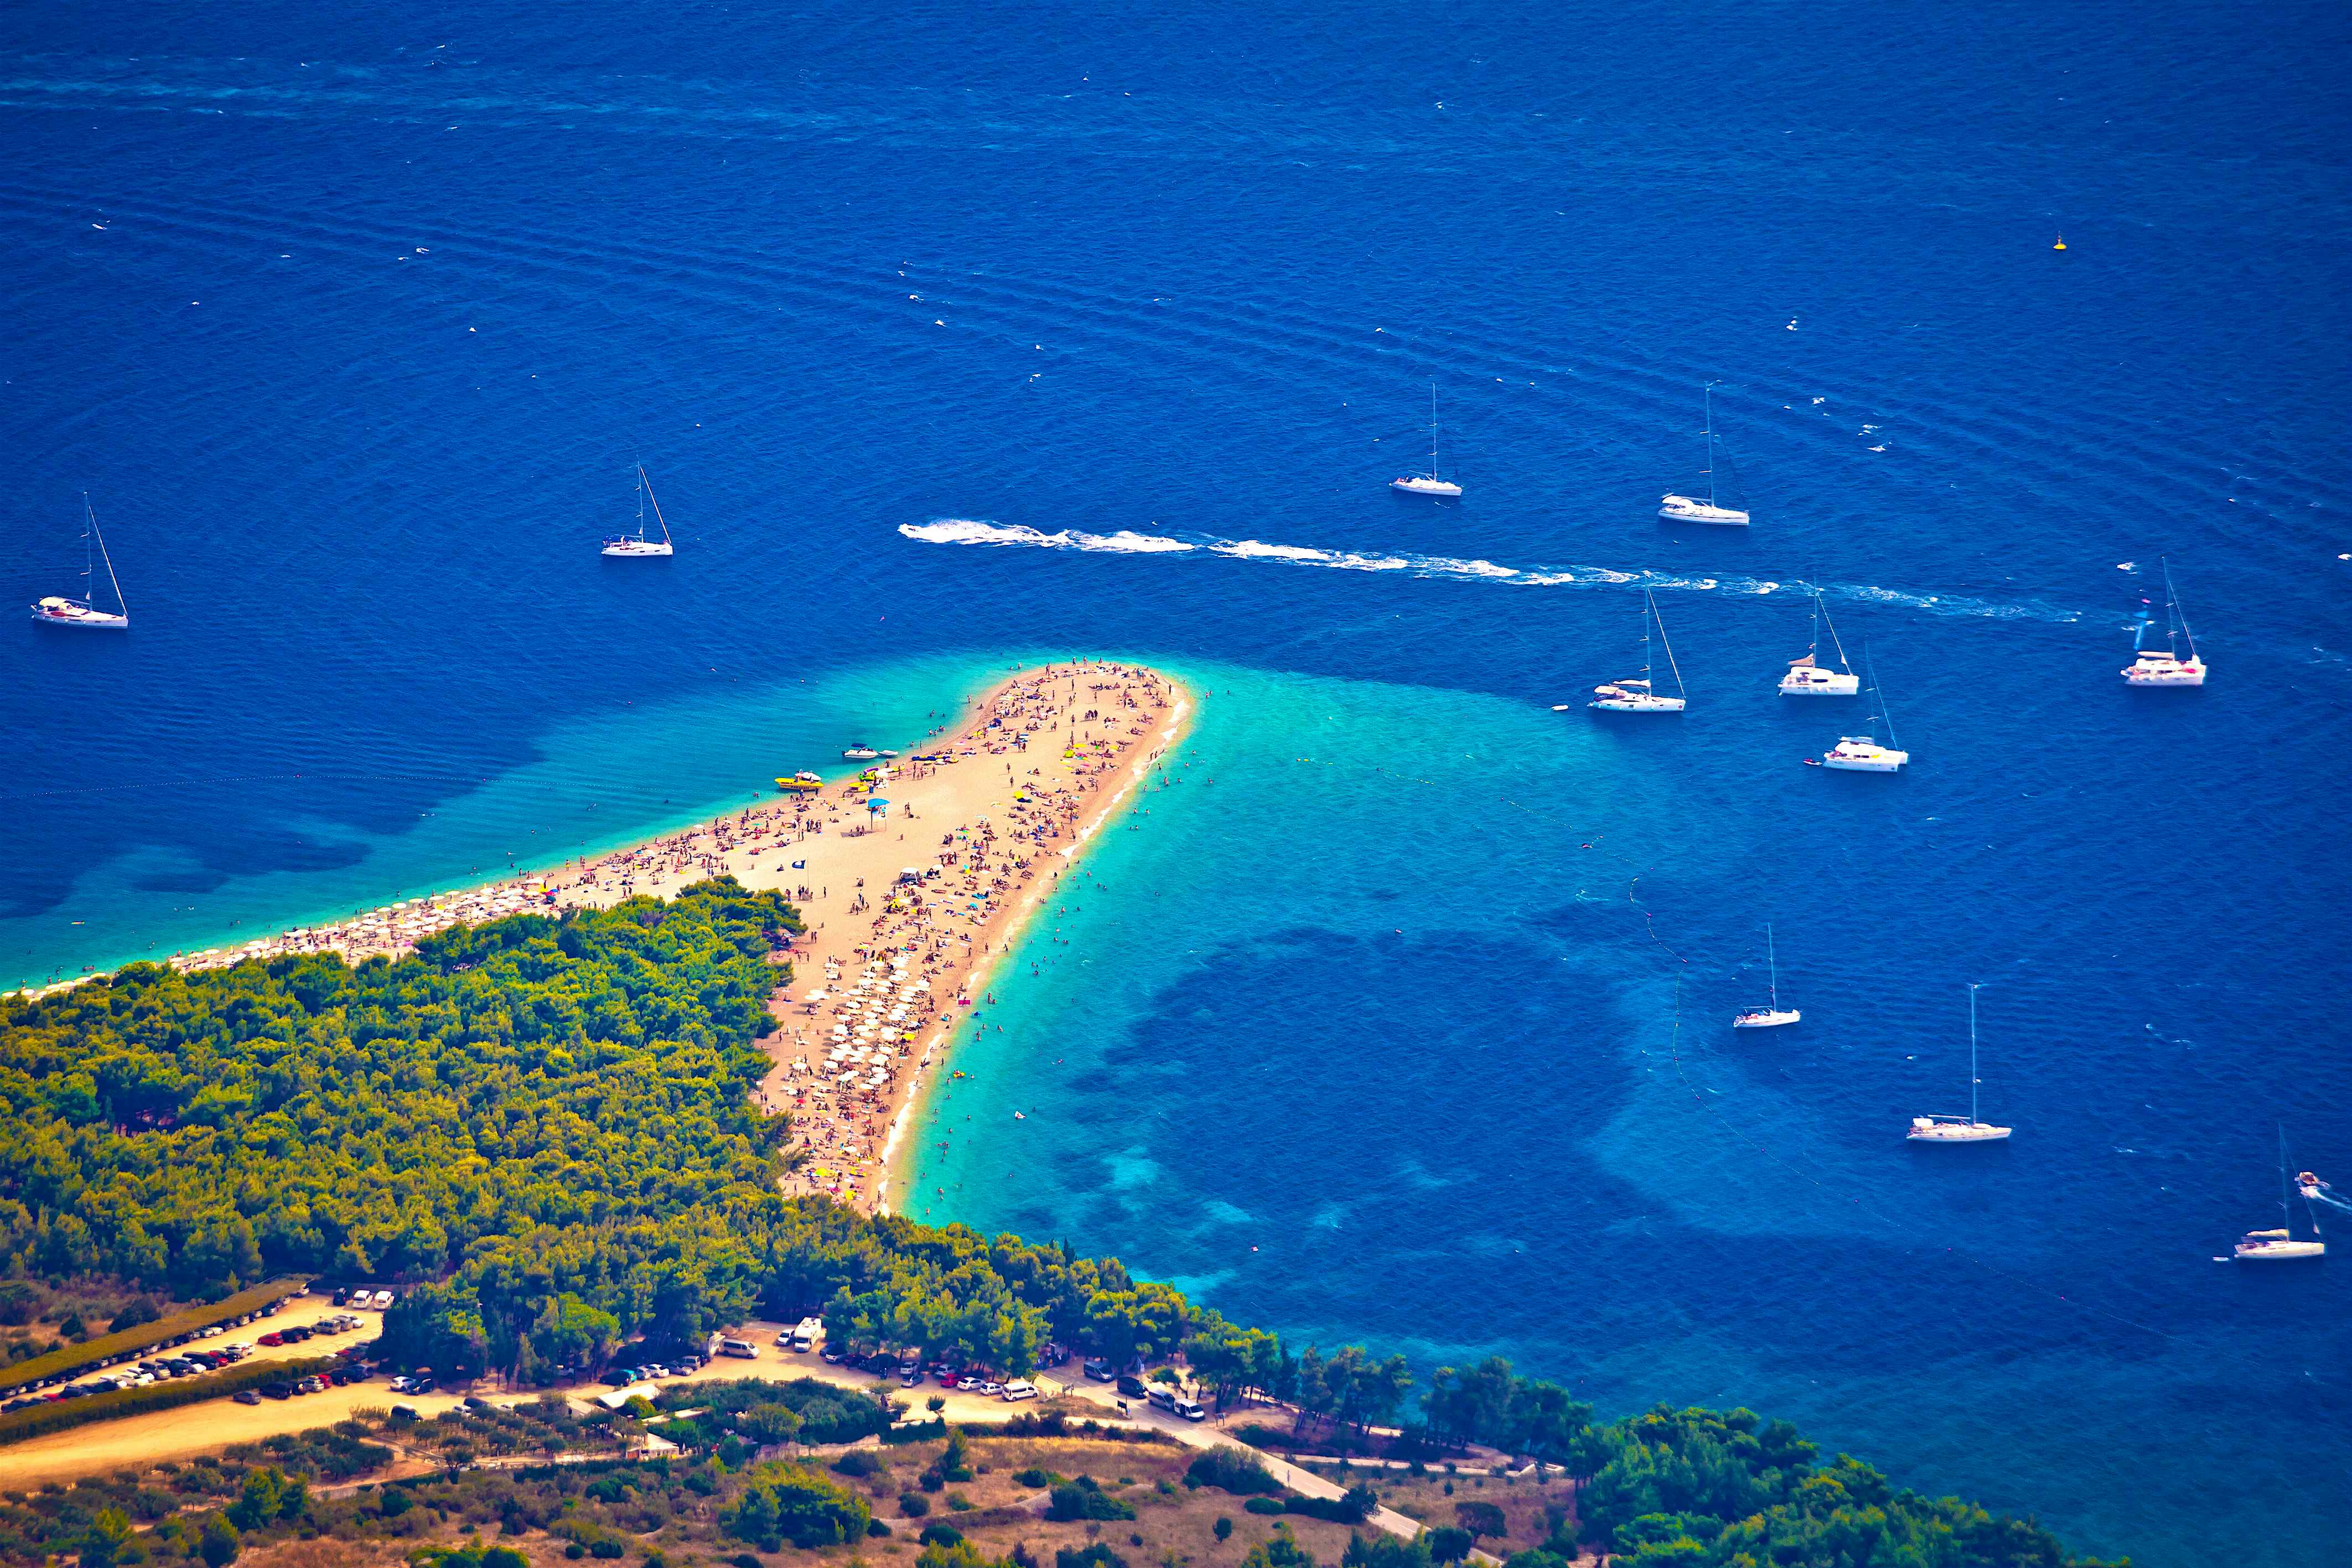 croatia over tourism